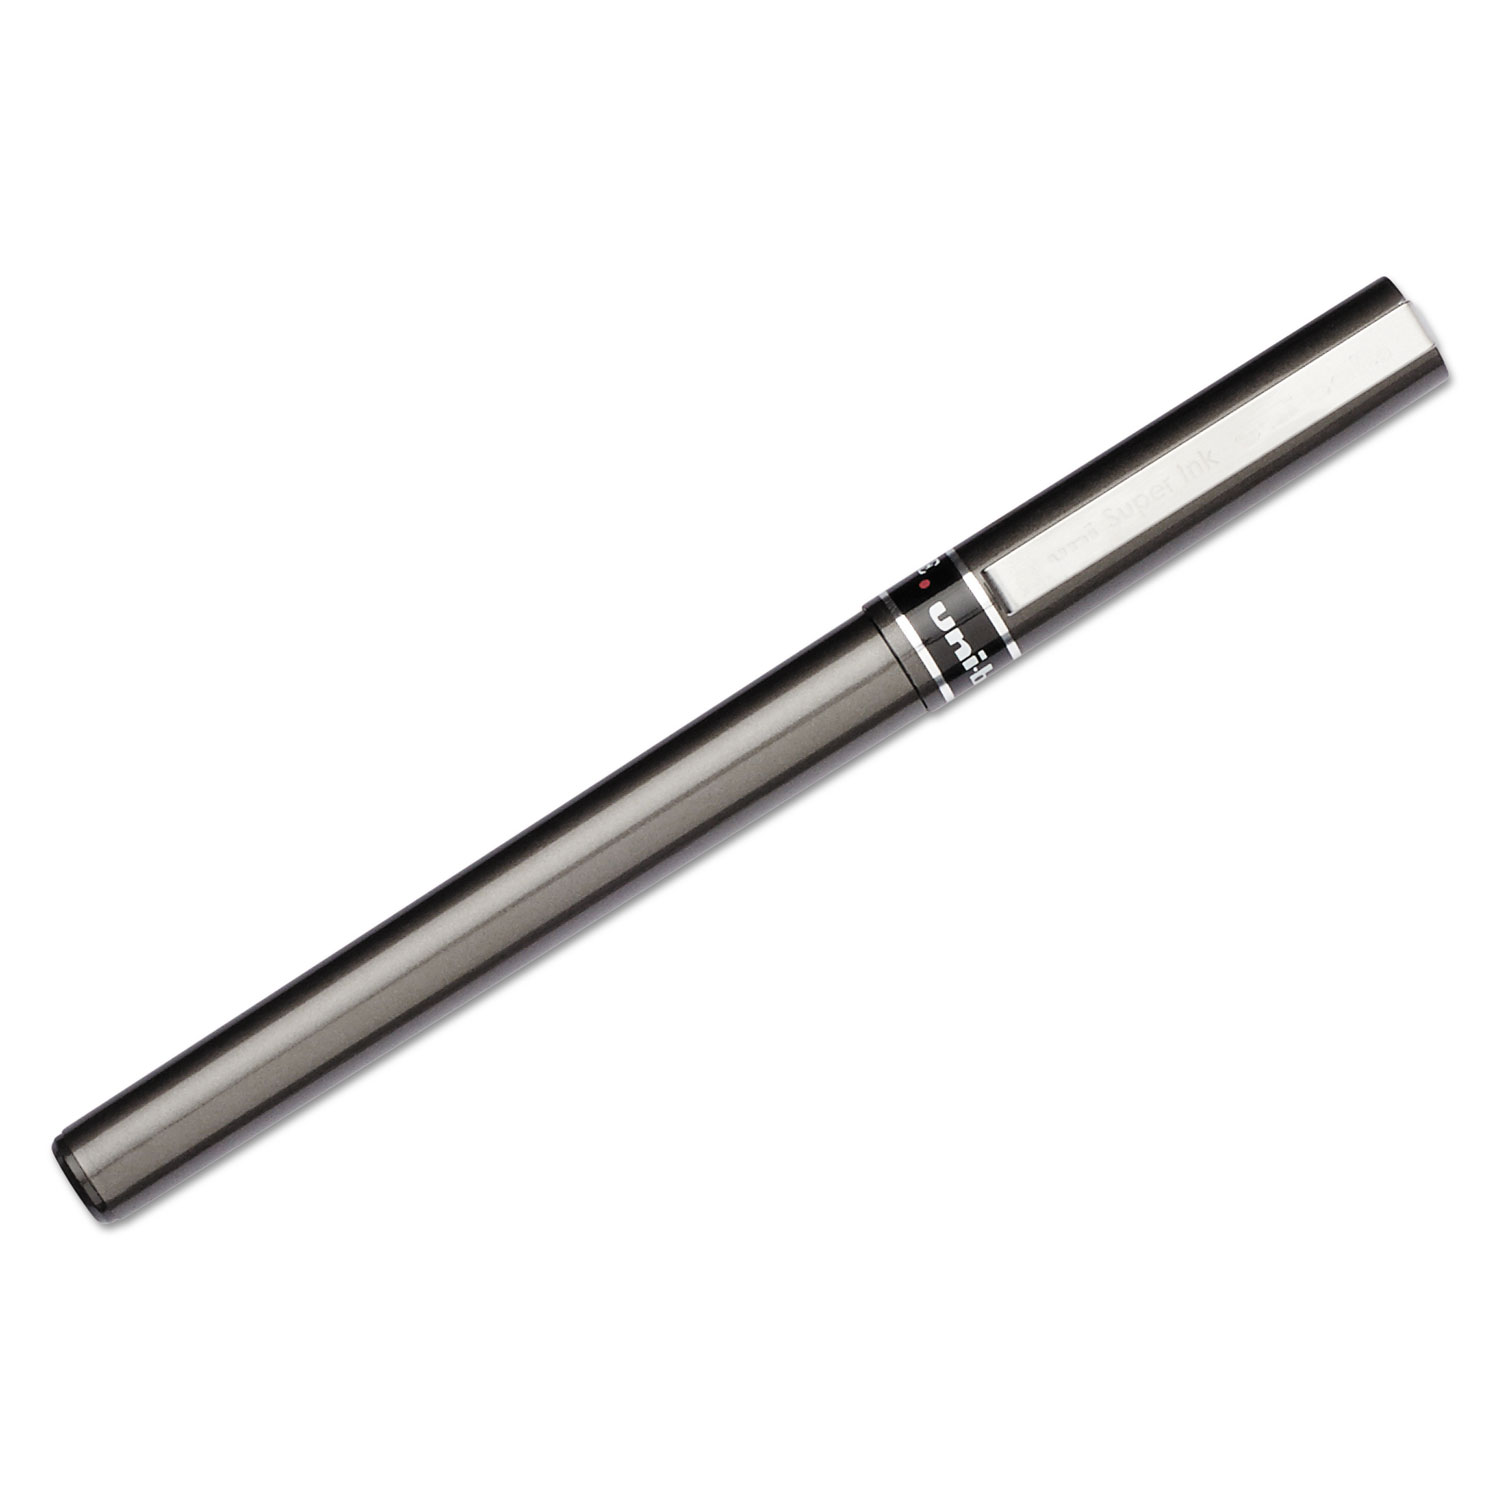 Deluxe Roller Ball Stick Waterproof Pen, Red Ink, Micro, Dozen